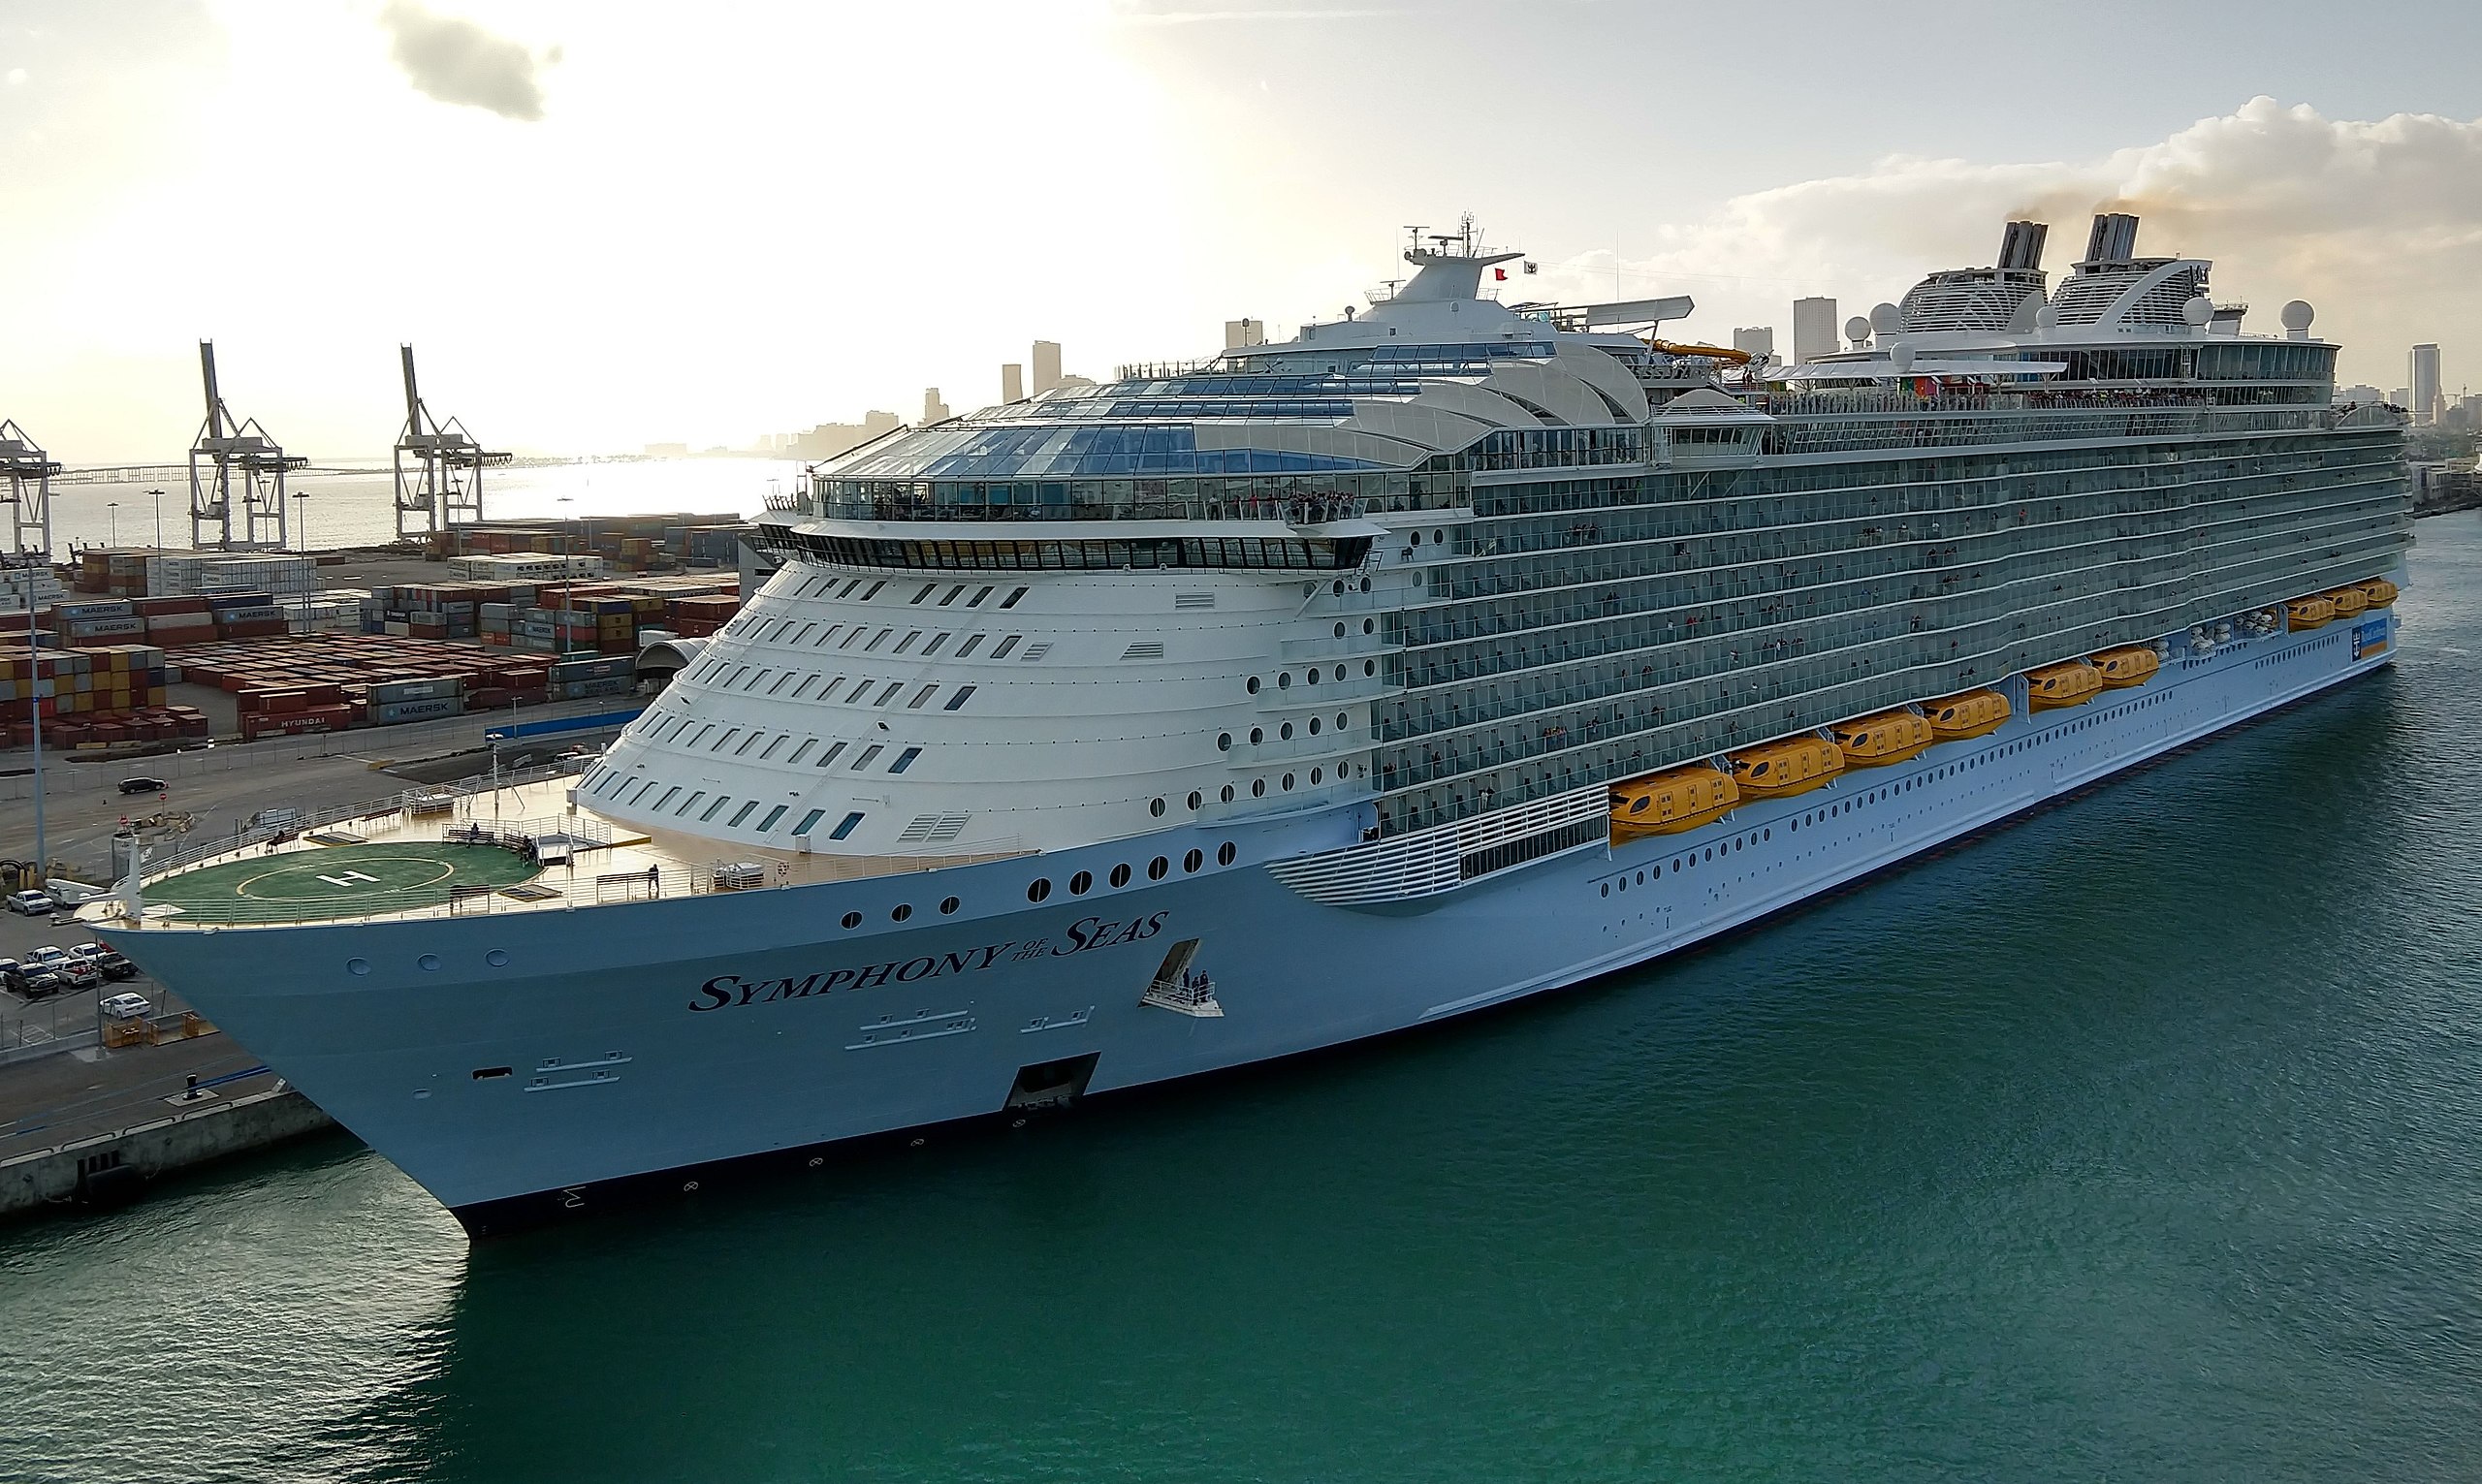 De Symphony of the Seas was van 2017 tot 2021 het grootste cruiseschip. (Foto Wikimedia)